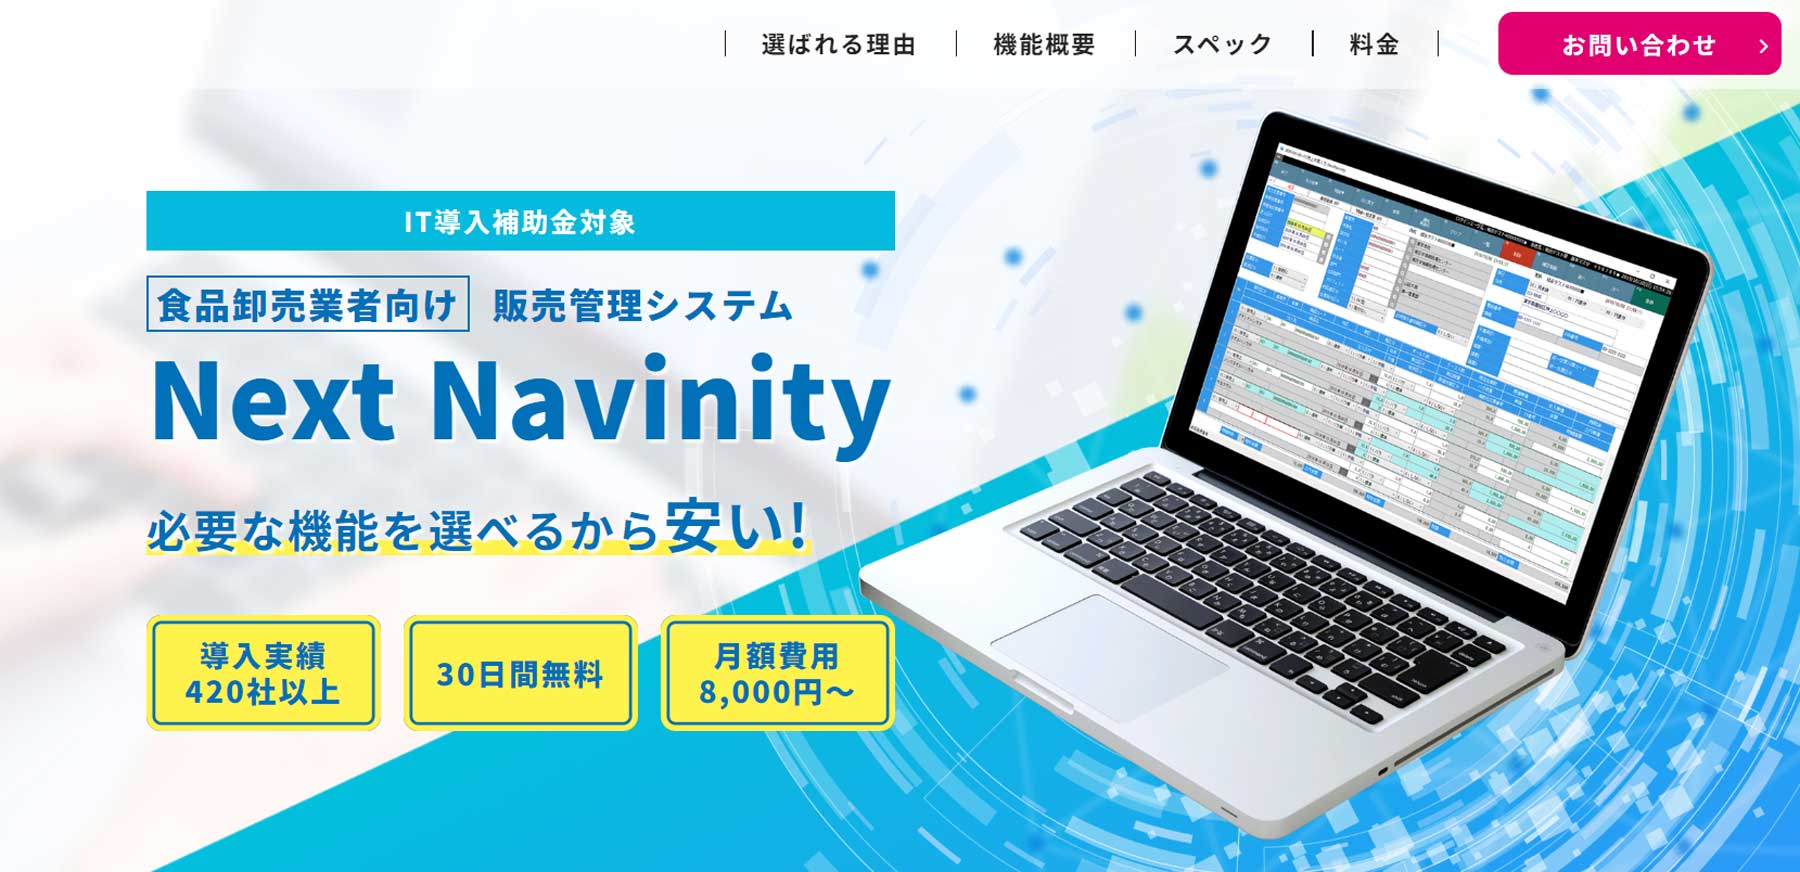 Next Navinity公式Webサイト